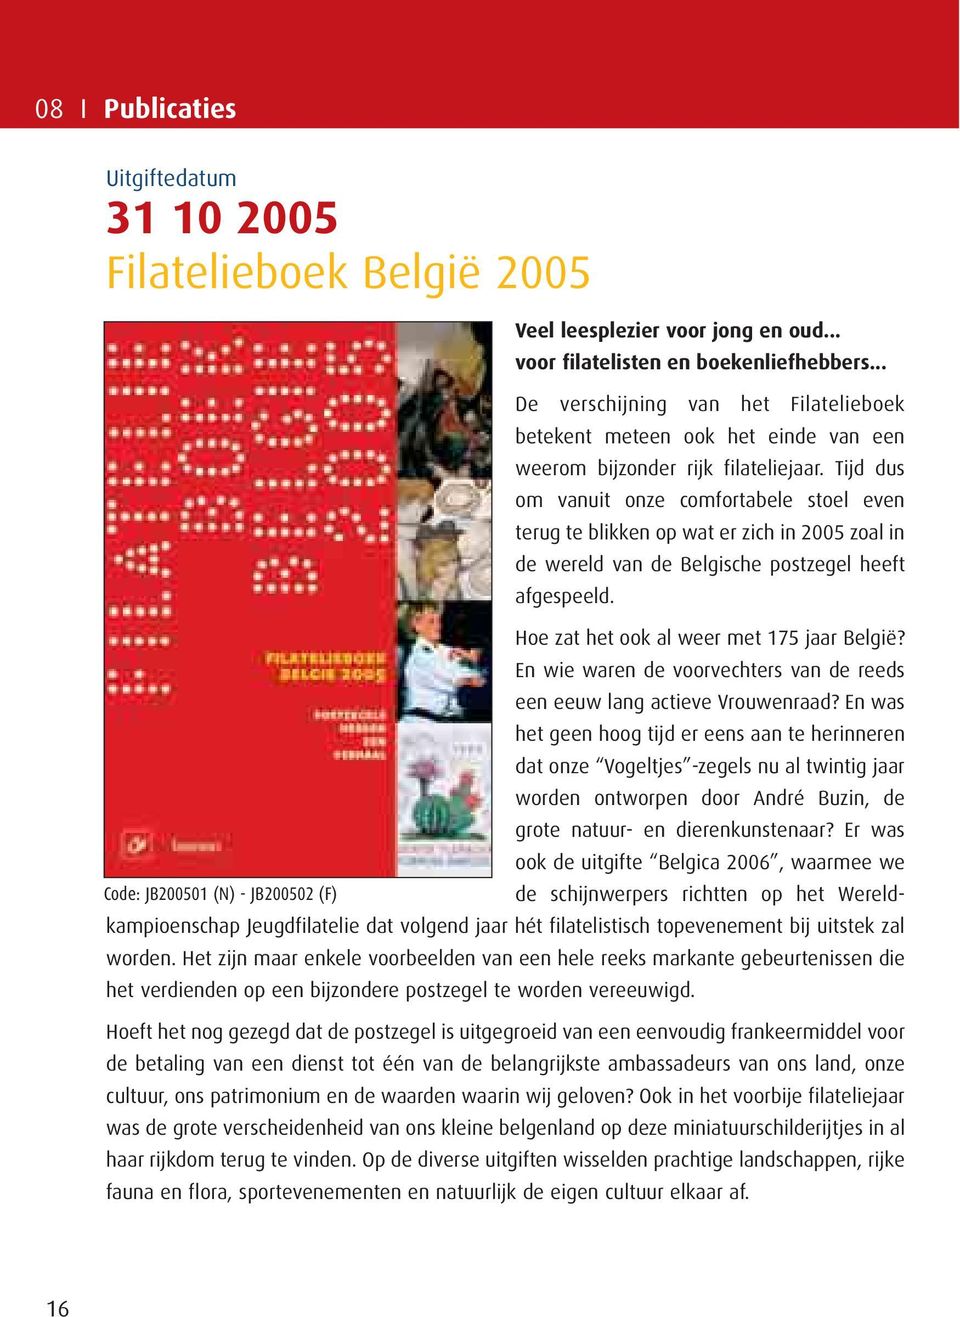 Tijd dus om vanuit onze comfortabele stoel even terug te blikken op wat er zich in 2005 zoal in de wereld van de Belgische postzegel heeft afgespeeld. Hoe zat het ook al weer met 175 jaar België?